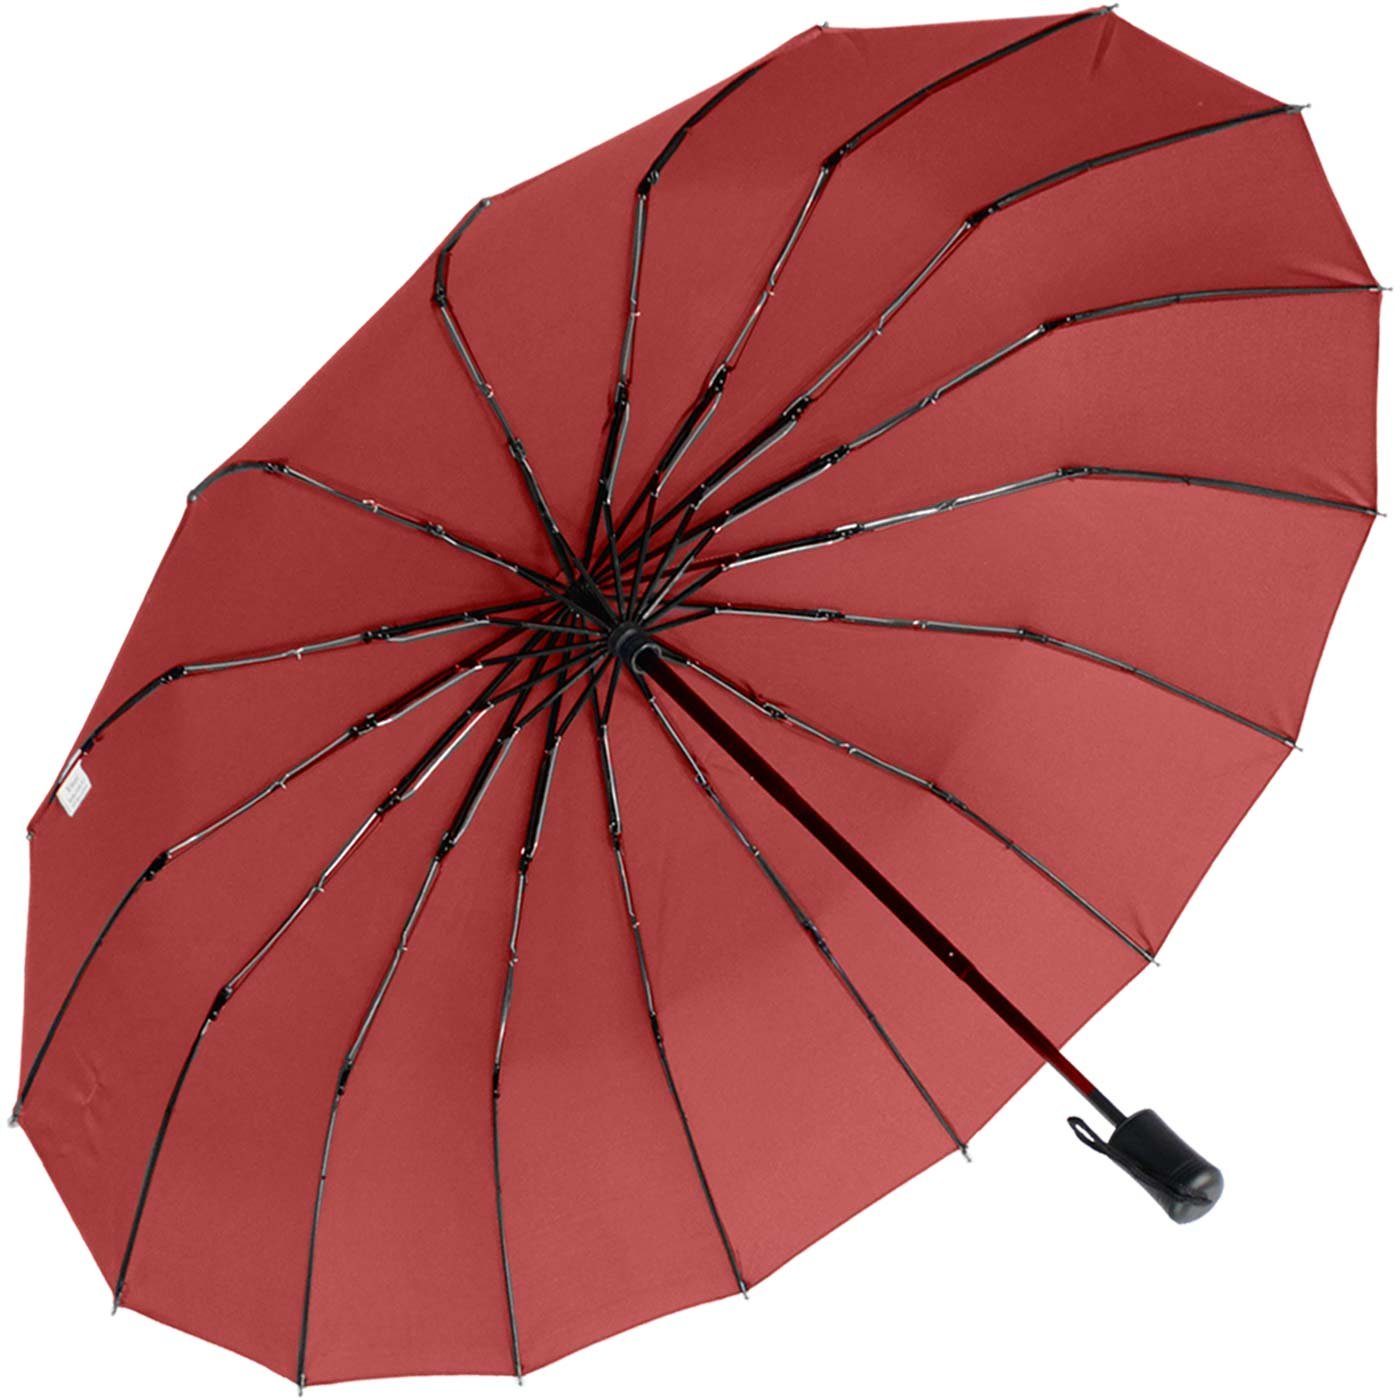 extra farbenfroh, Taschenregenschirm auffällig stabil iX-brella extravagant 16 dunkelrot Mini und und mit Streben